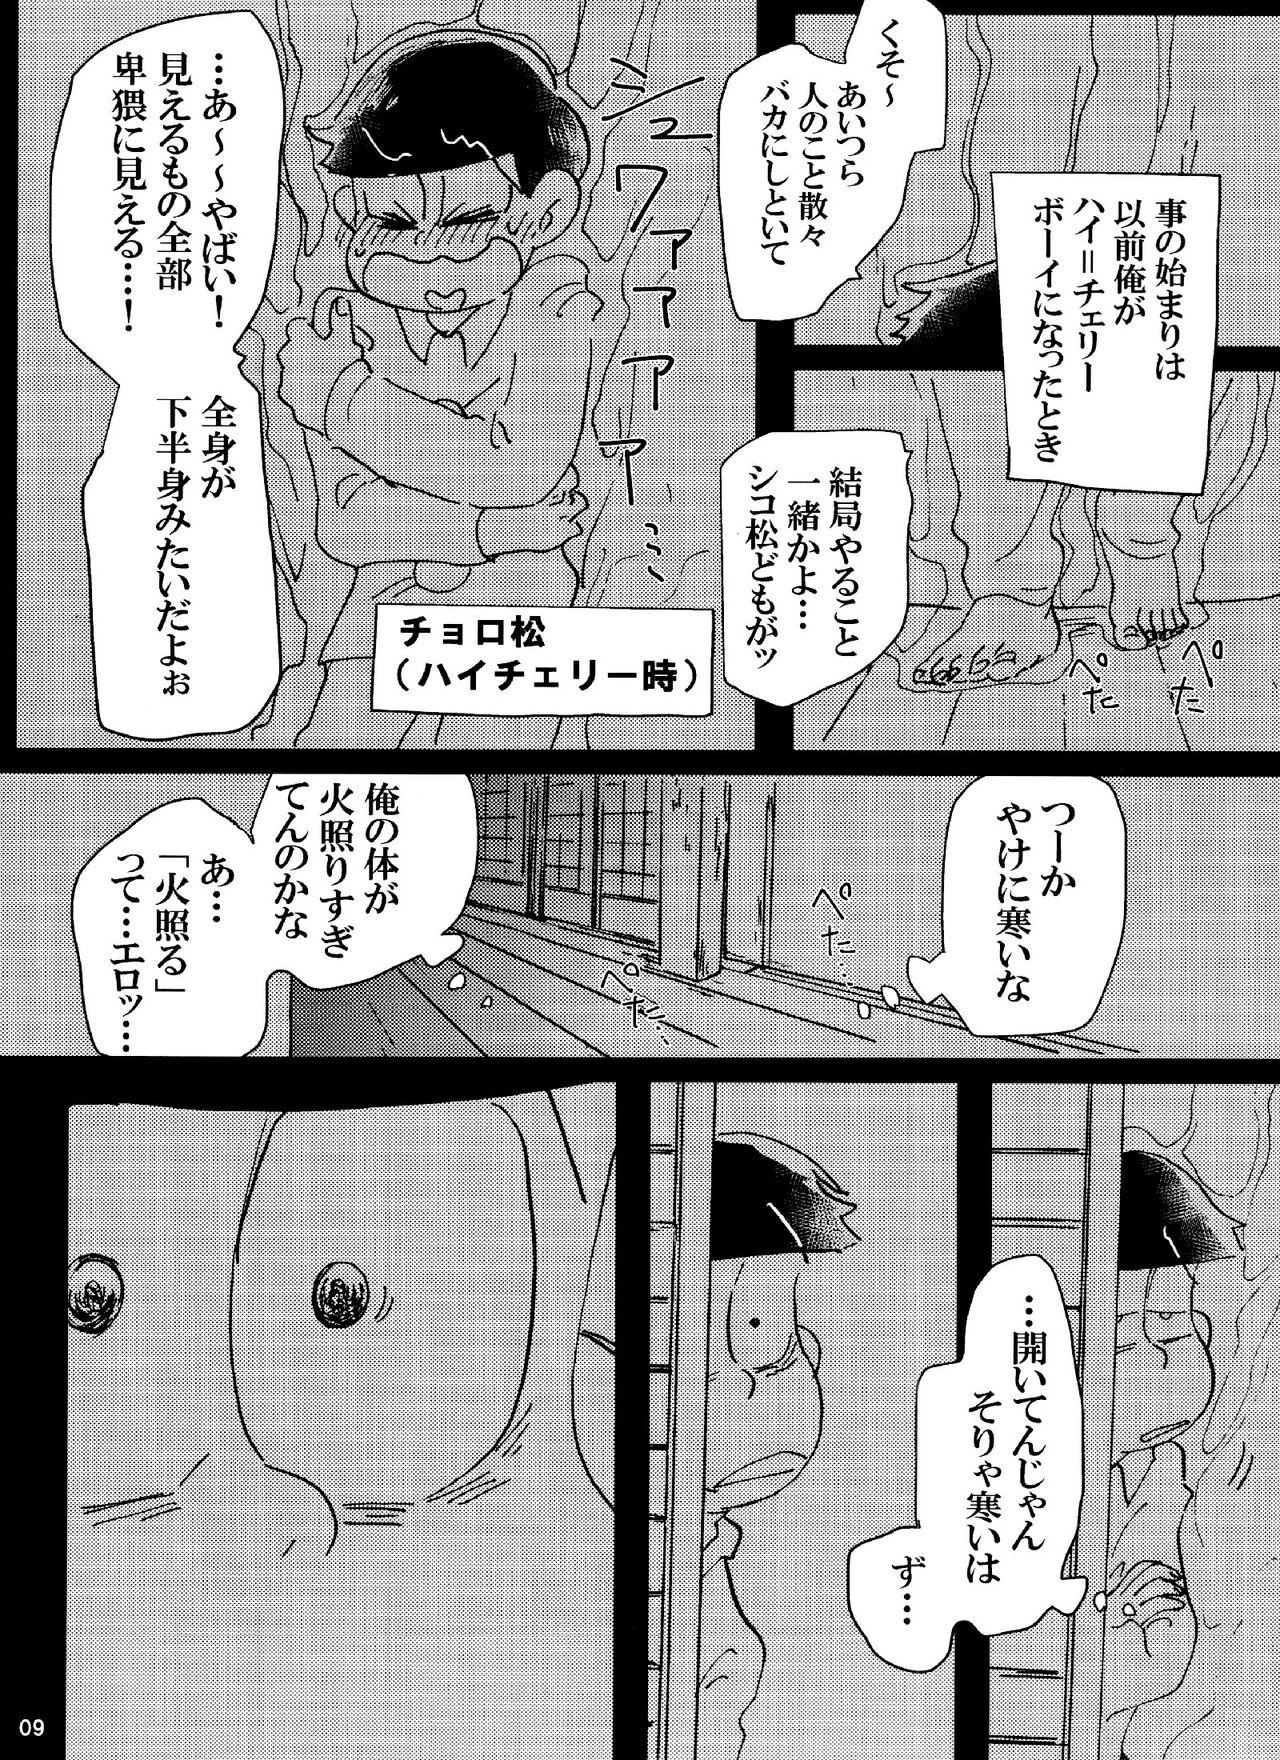 Bigbutt Baka to shiko matsu ga ma guwa u hanashi - Osomatsu san Old Young - Page 9